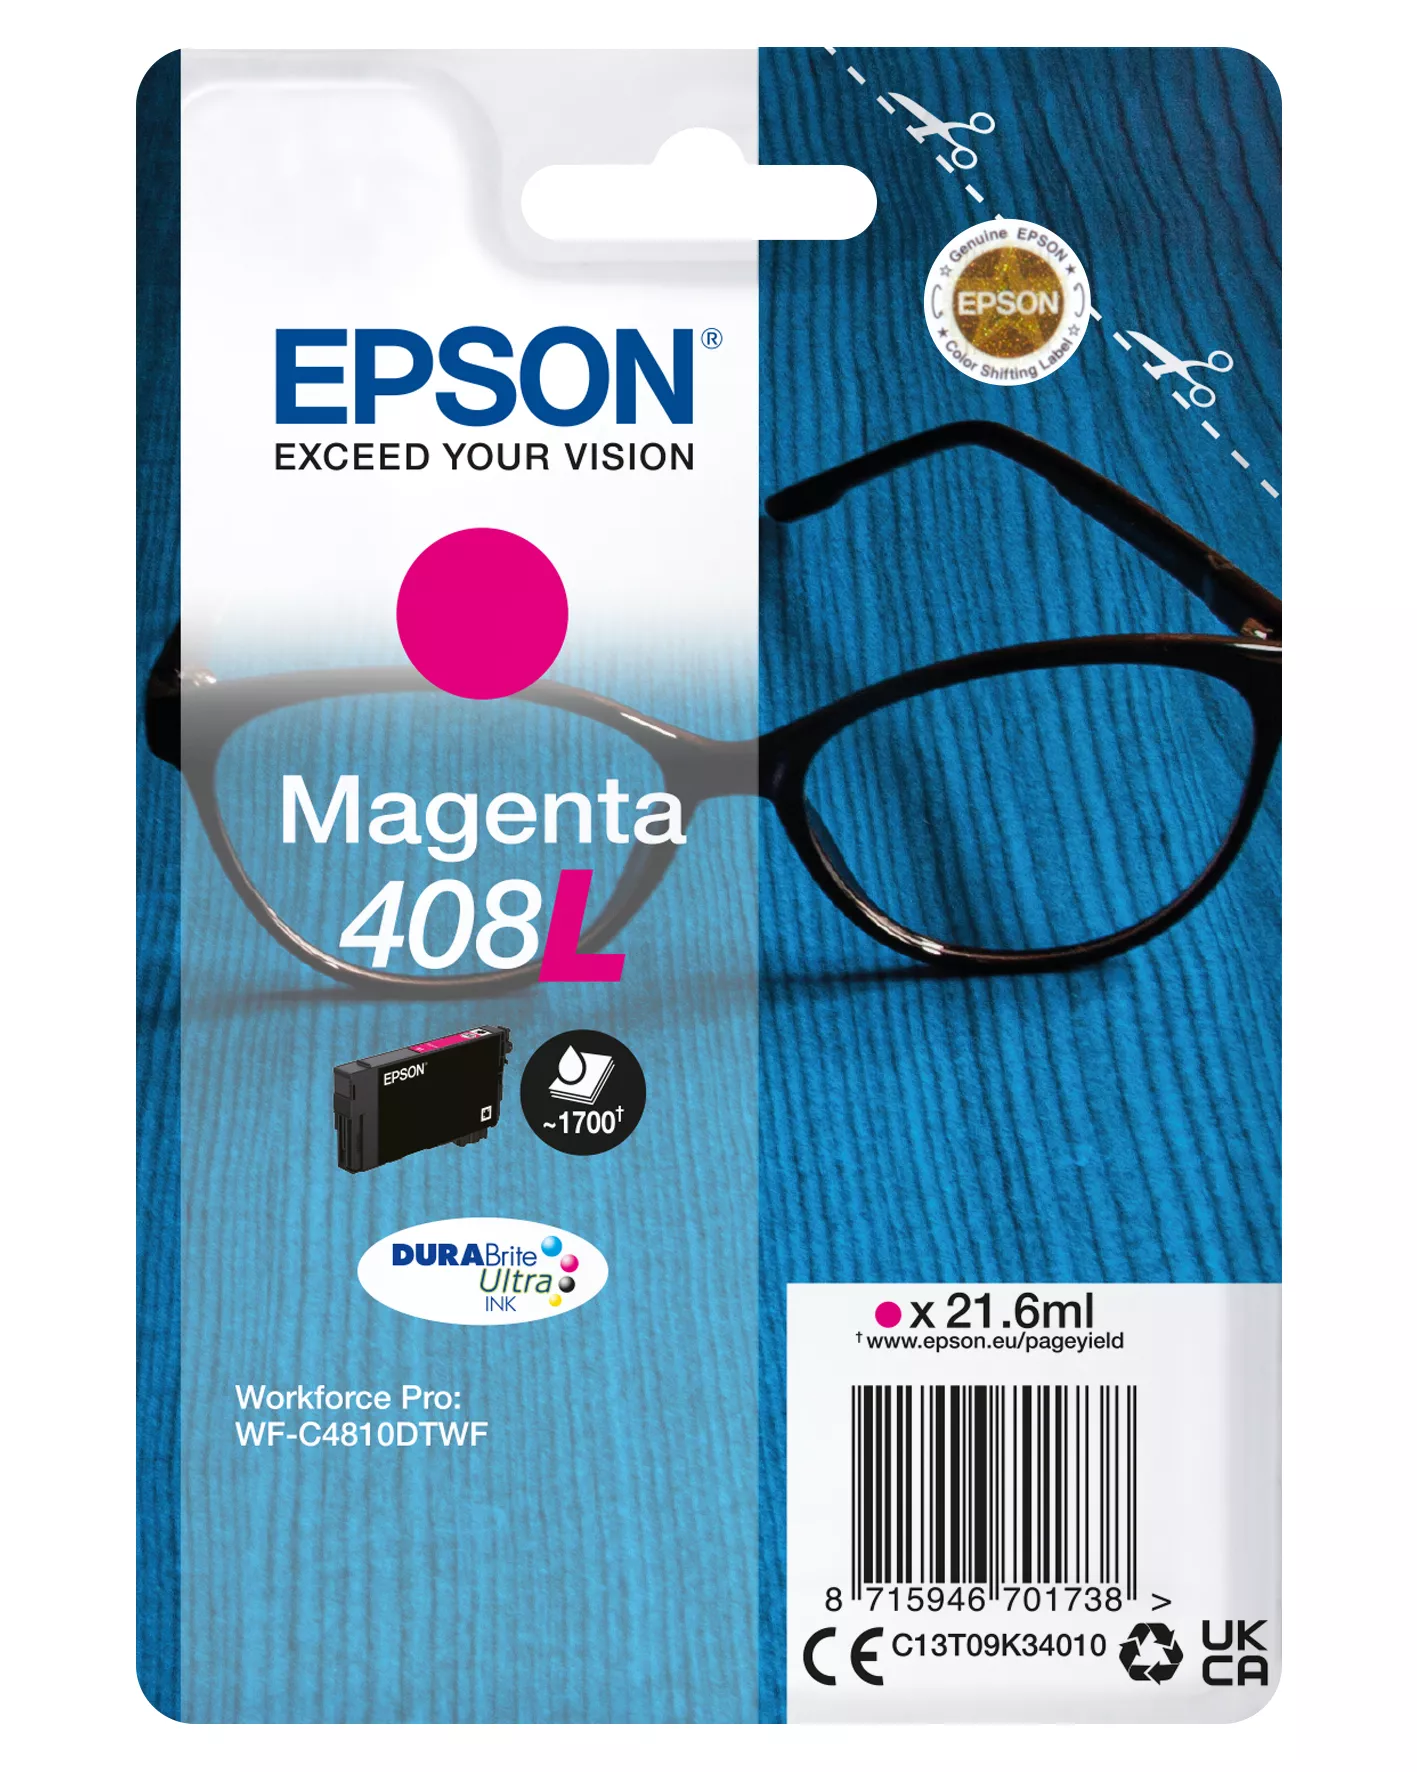 Vente EPSON Singlepack Magenta 408L DURABrite Ultra Ink au meilleur prix